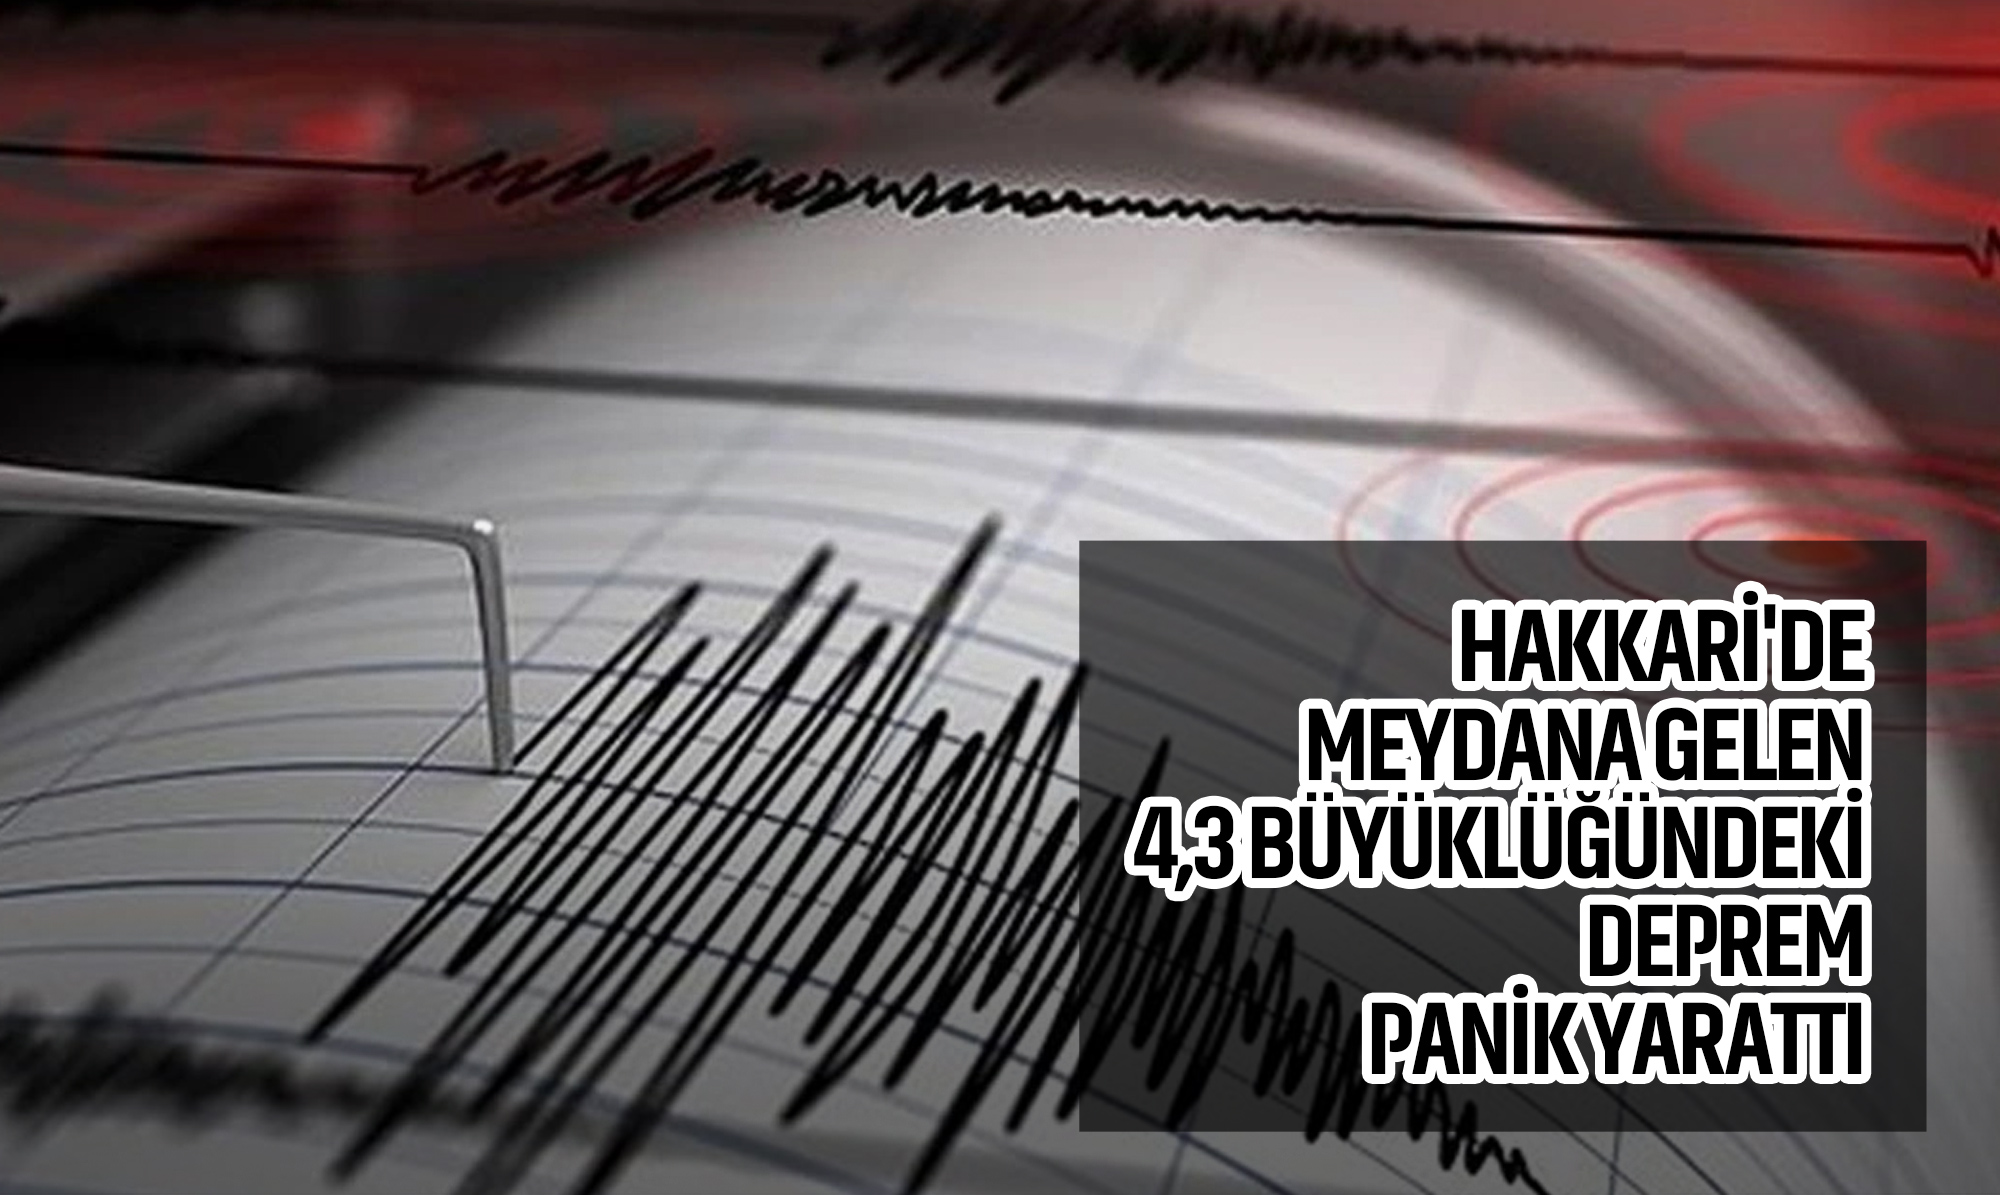 Hakkari'de meydana gelen 4,3 büyüklüğündeki deprem panik yarattı